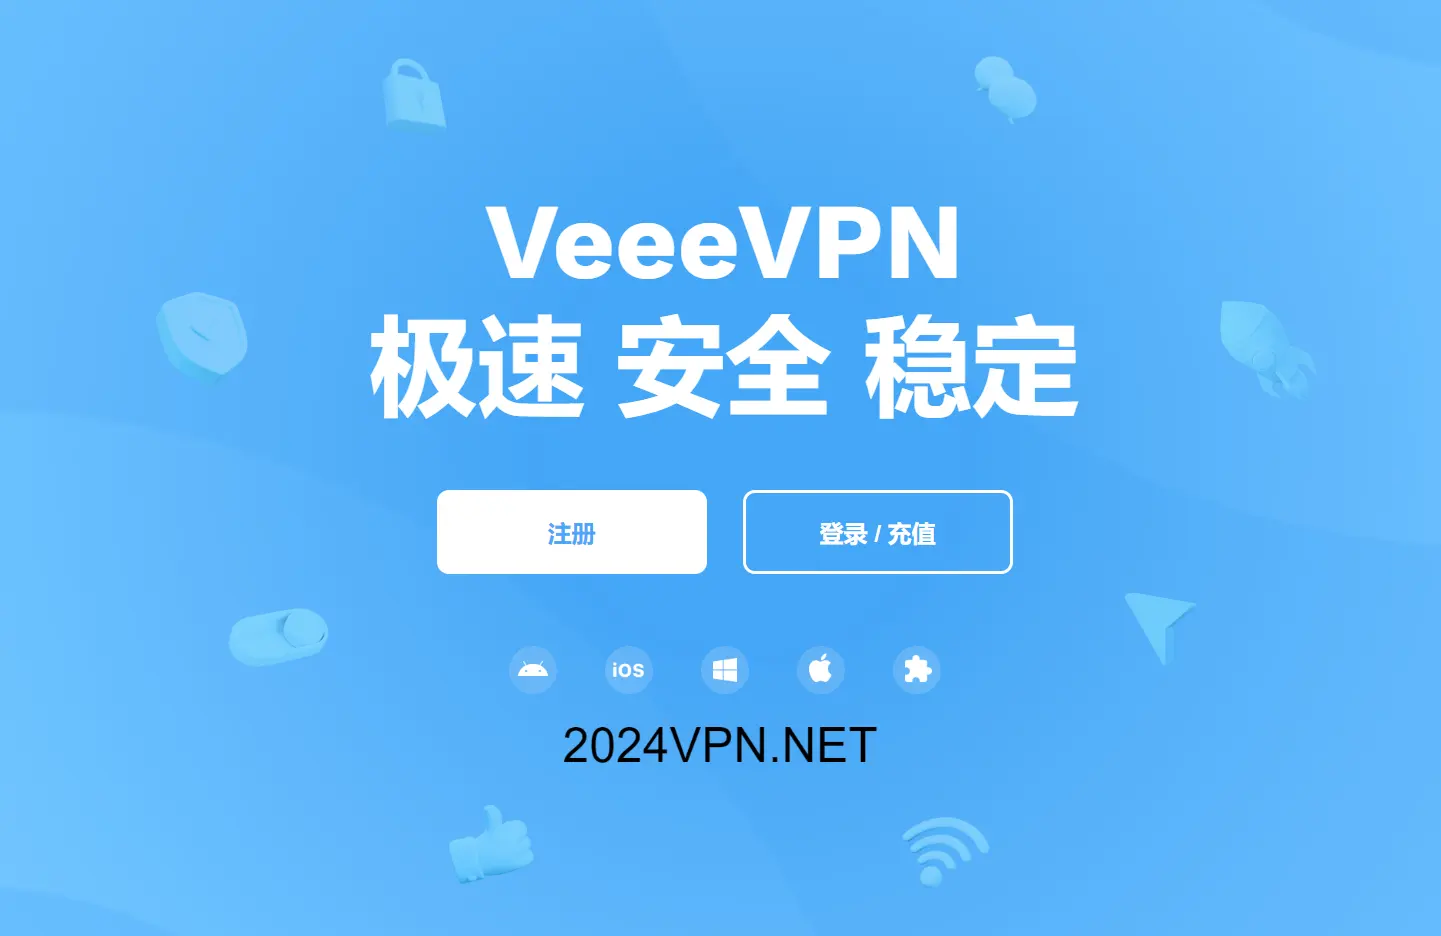 Veee VPN